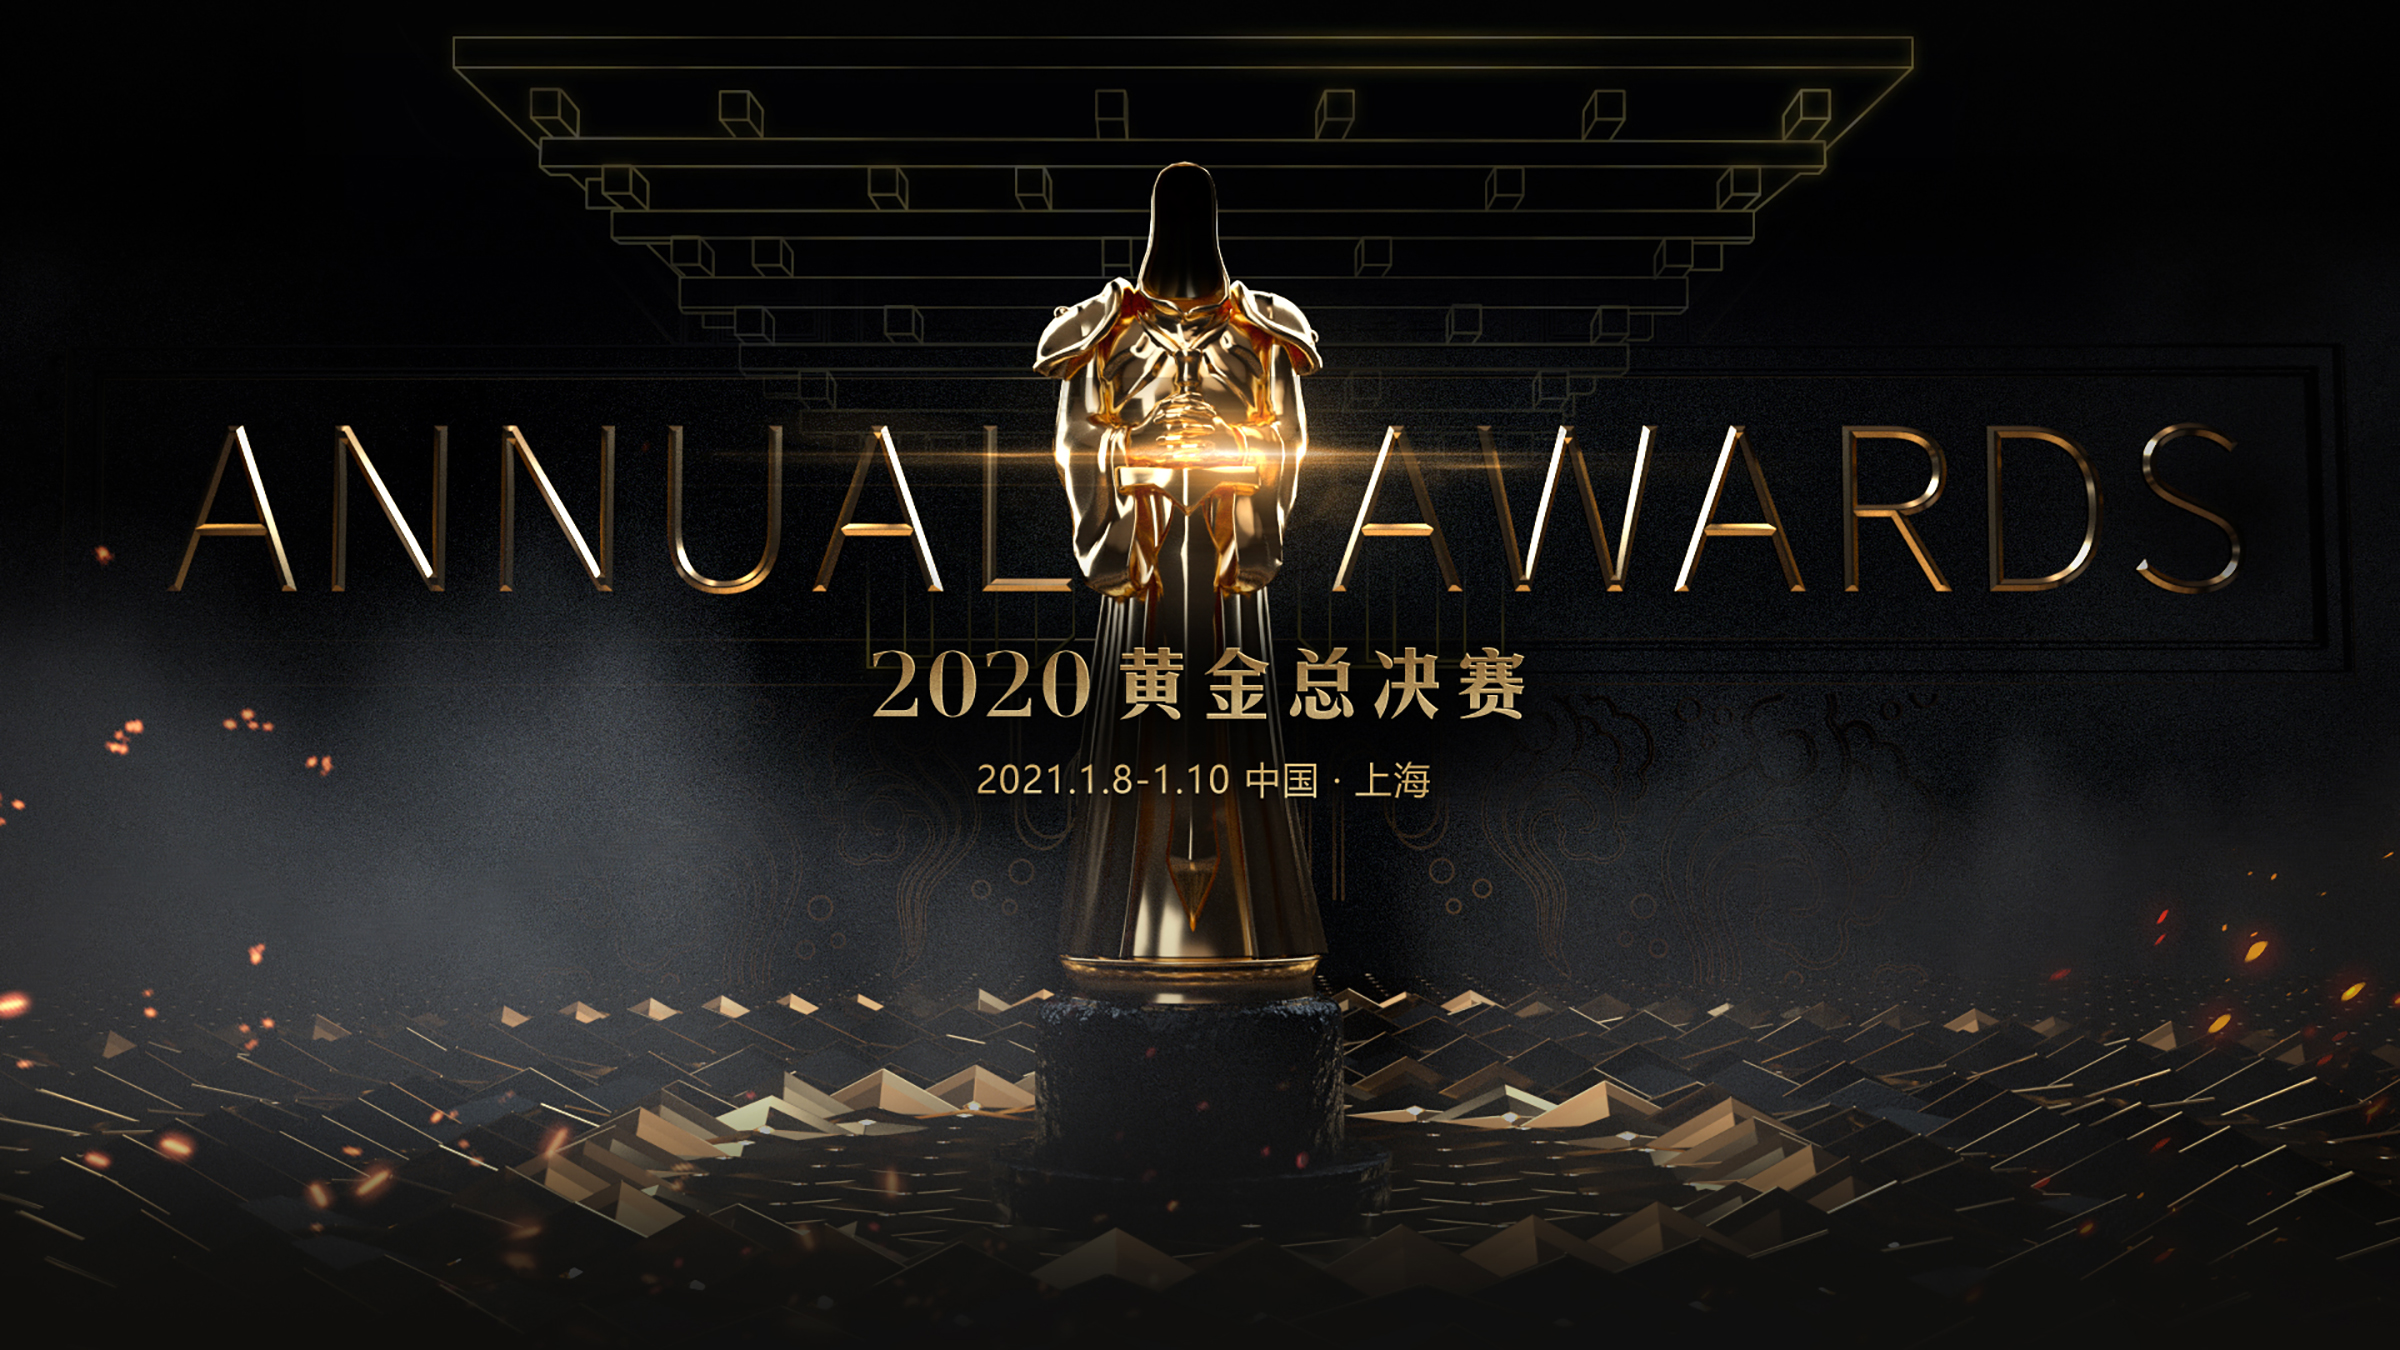 2020黄金总决赛移师上海 参赛选手现已揭晓